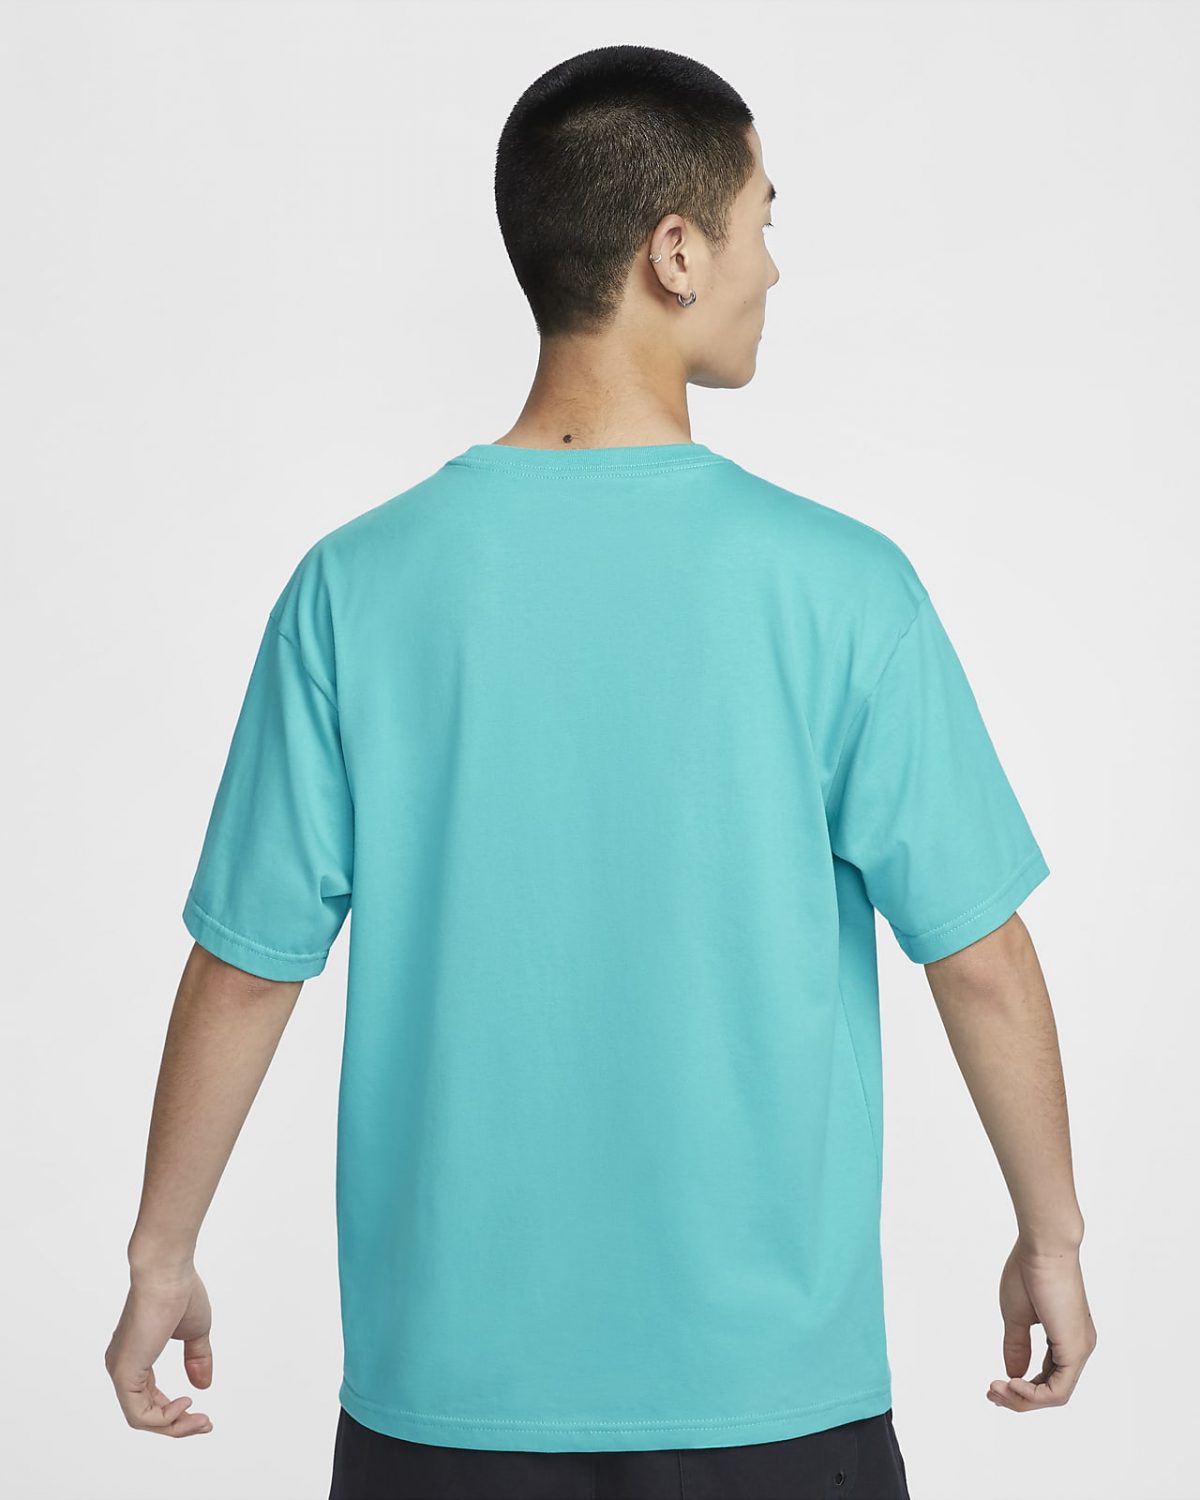 Мужская футболка Nike Sportswear Club зеленая фотография